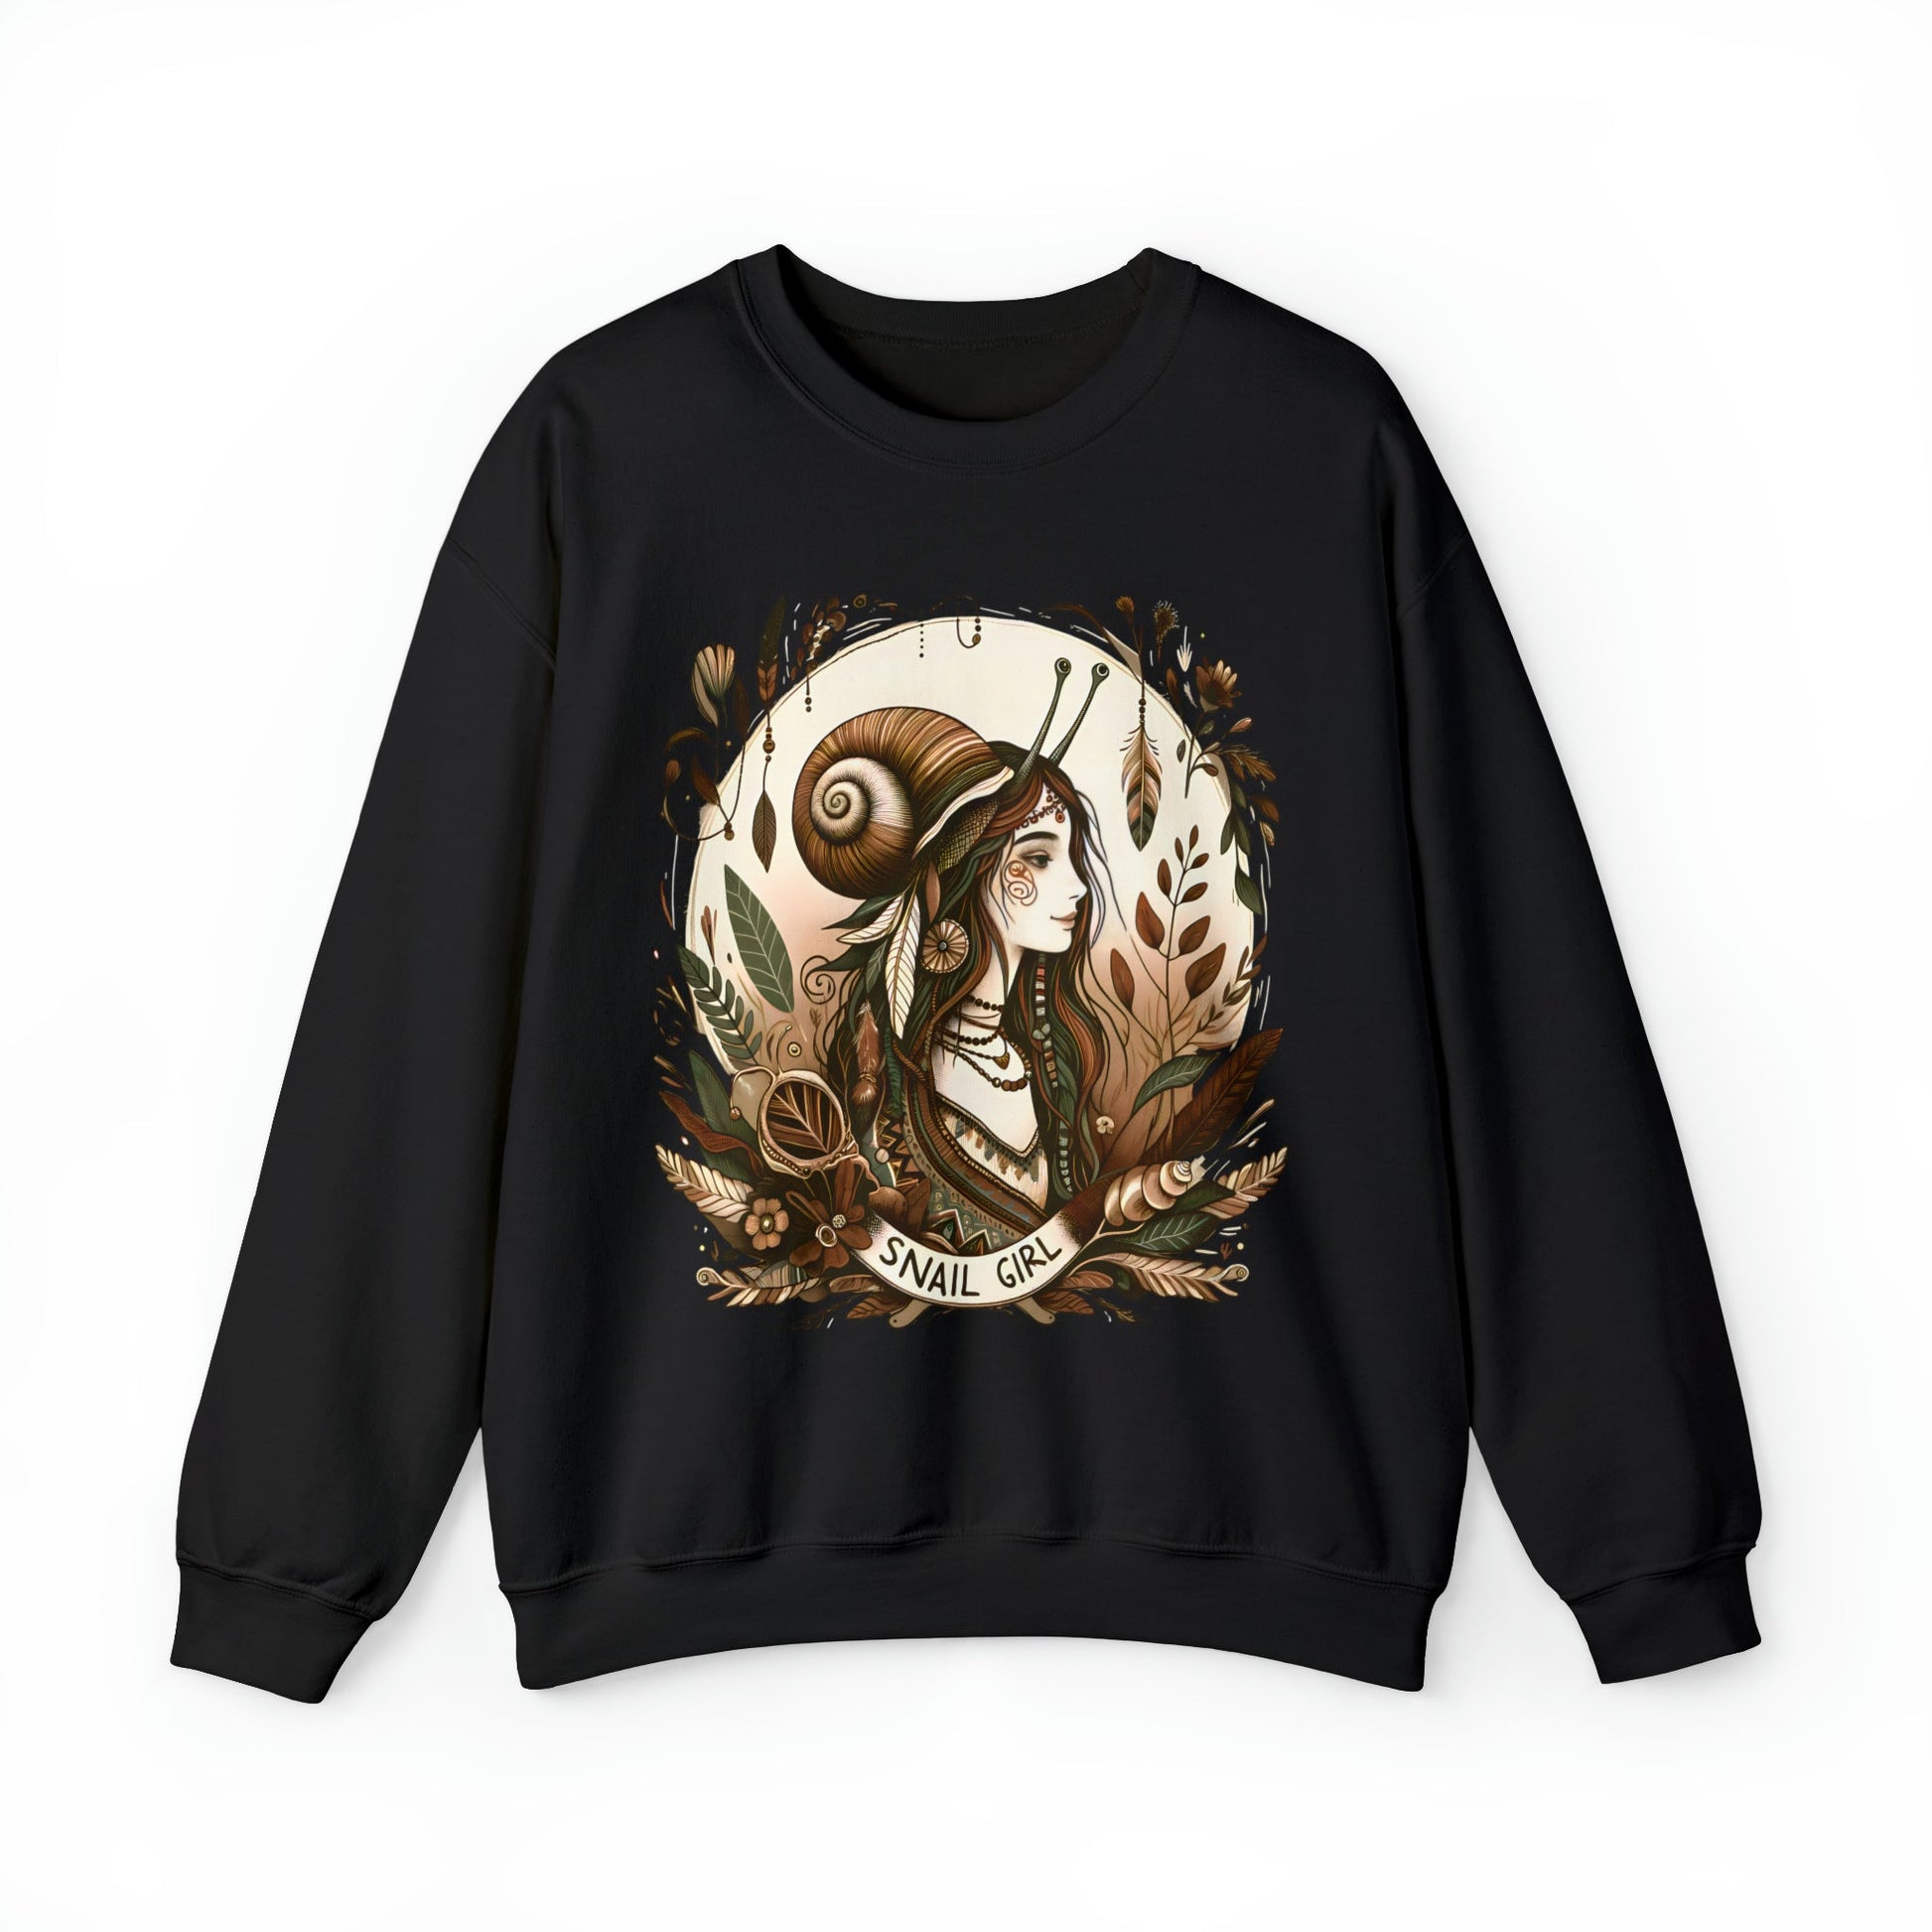 Fairycore Snail Girl Sweatshirt